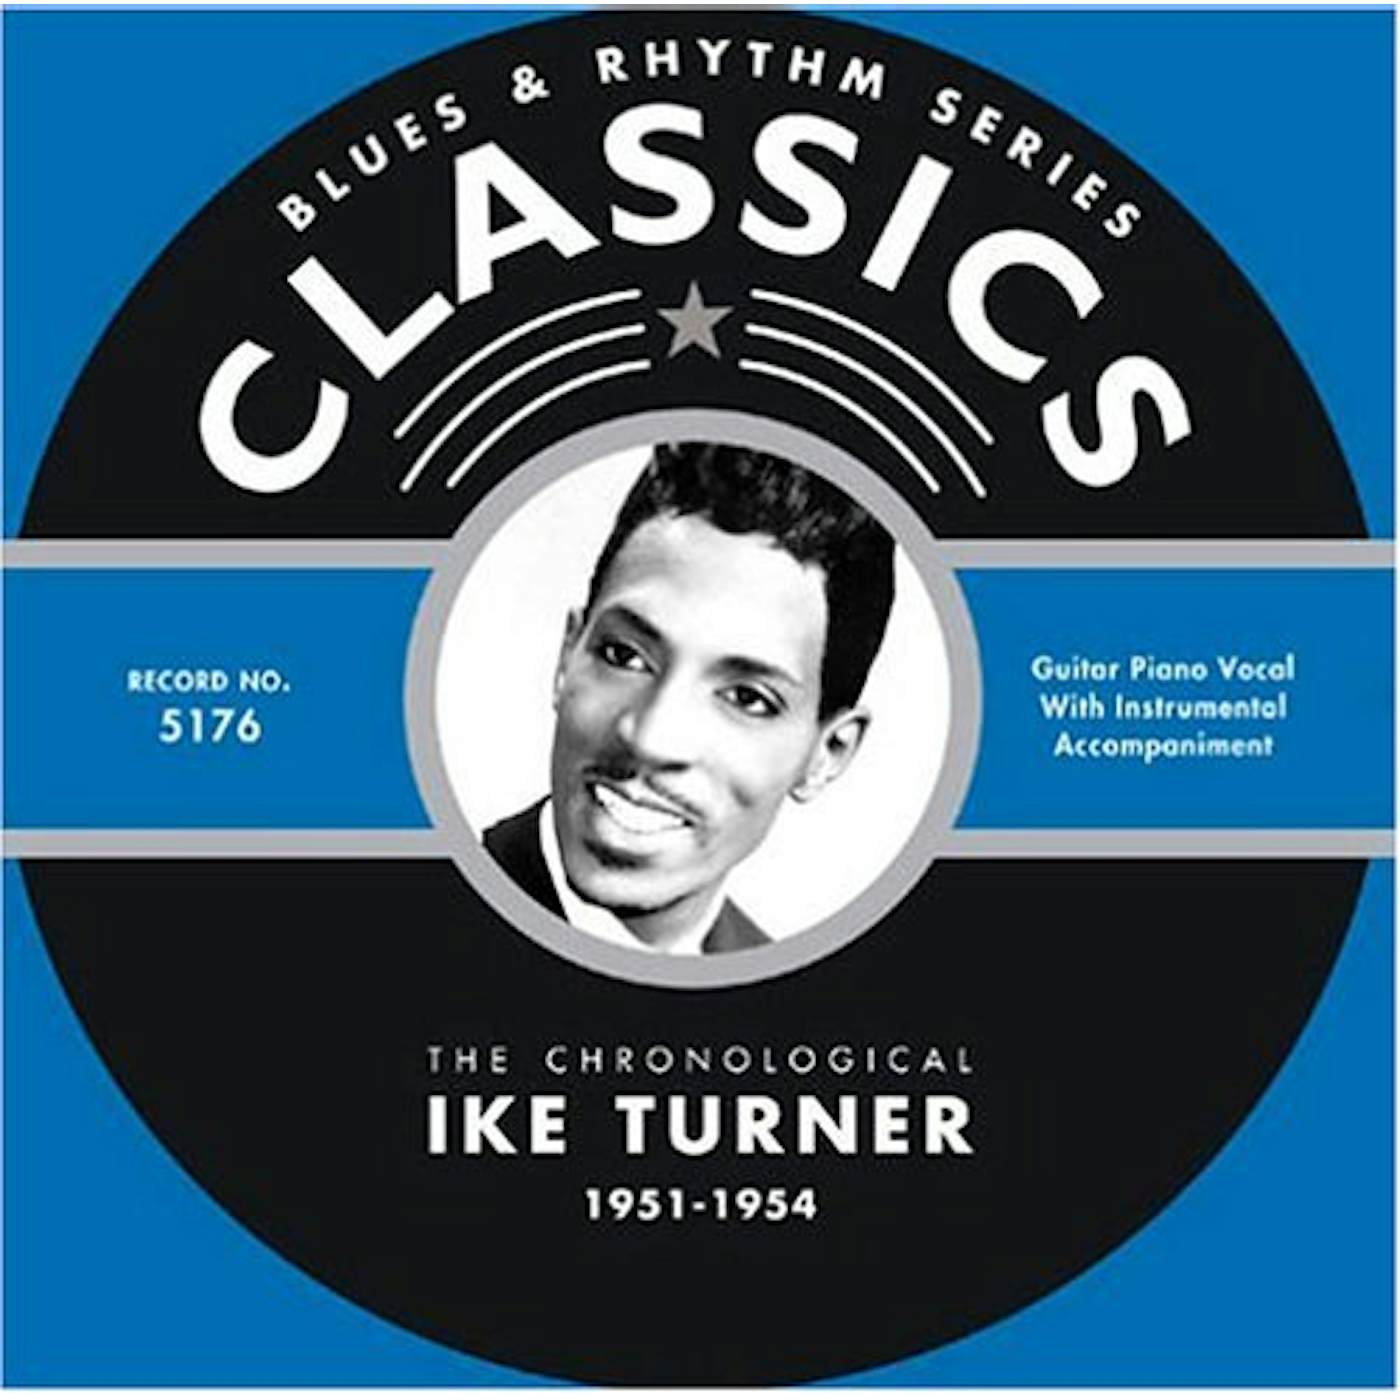 Ike Turner 1951-1954 CD